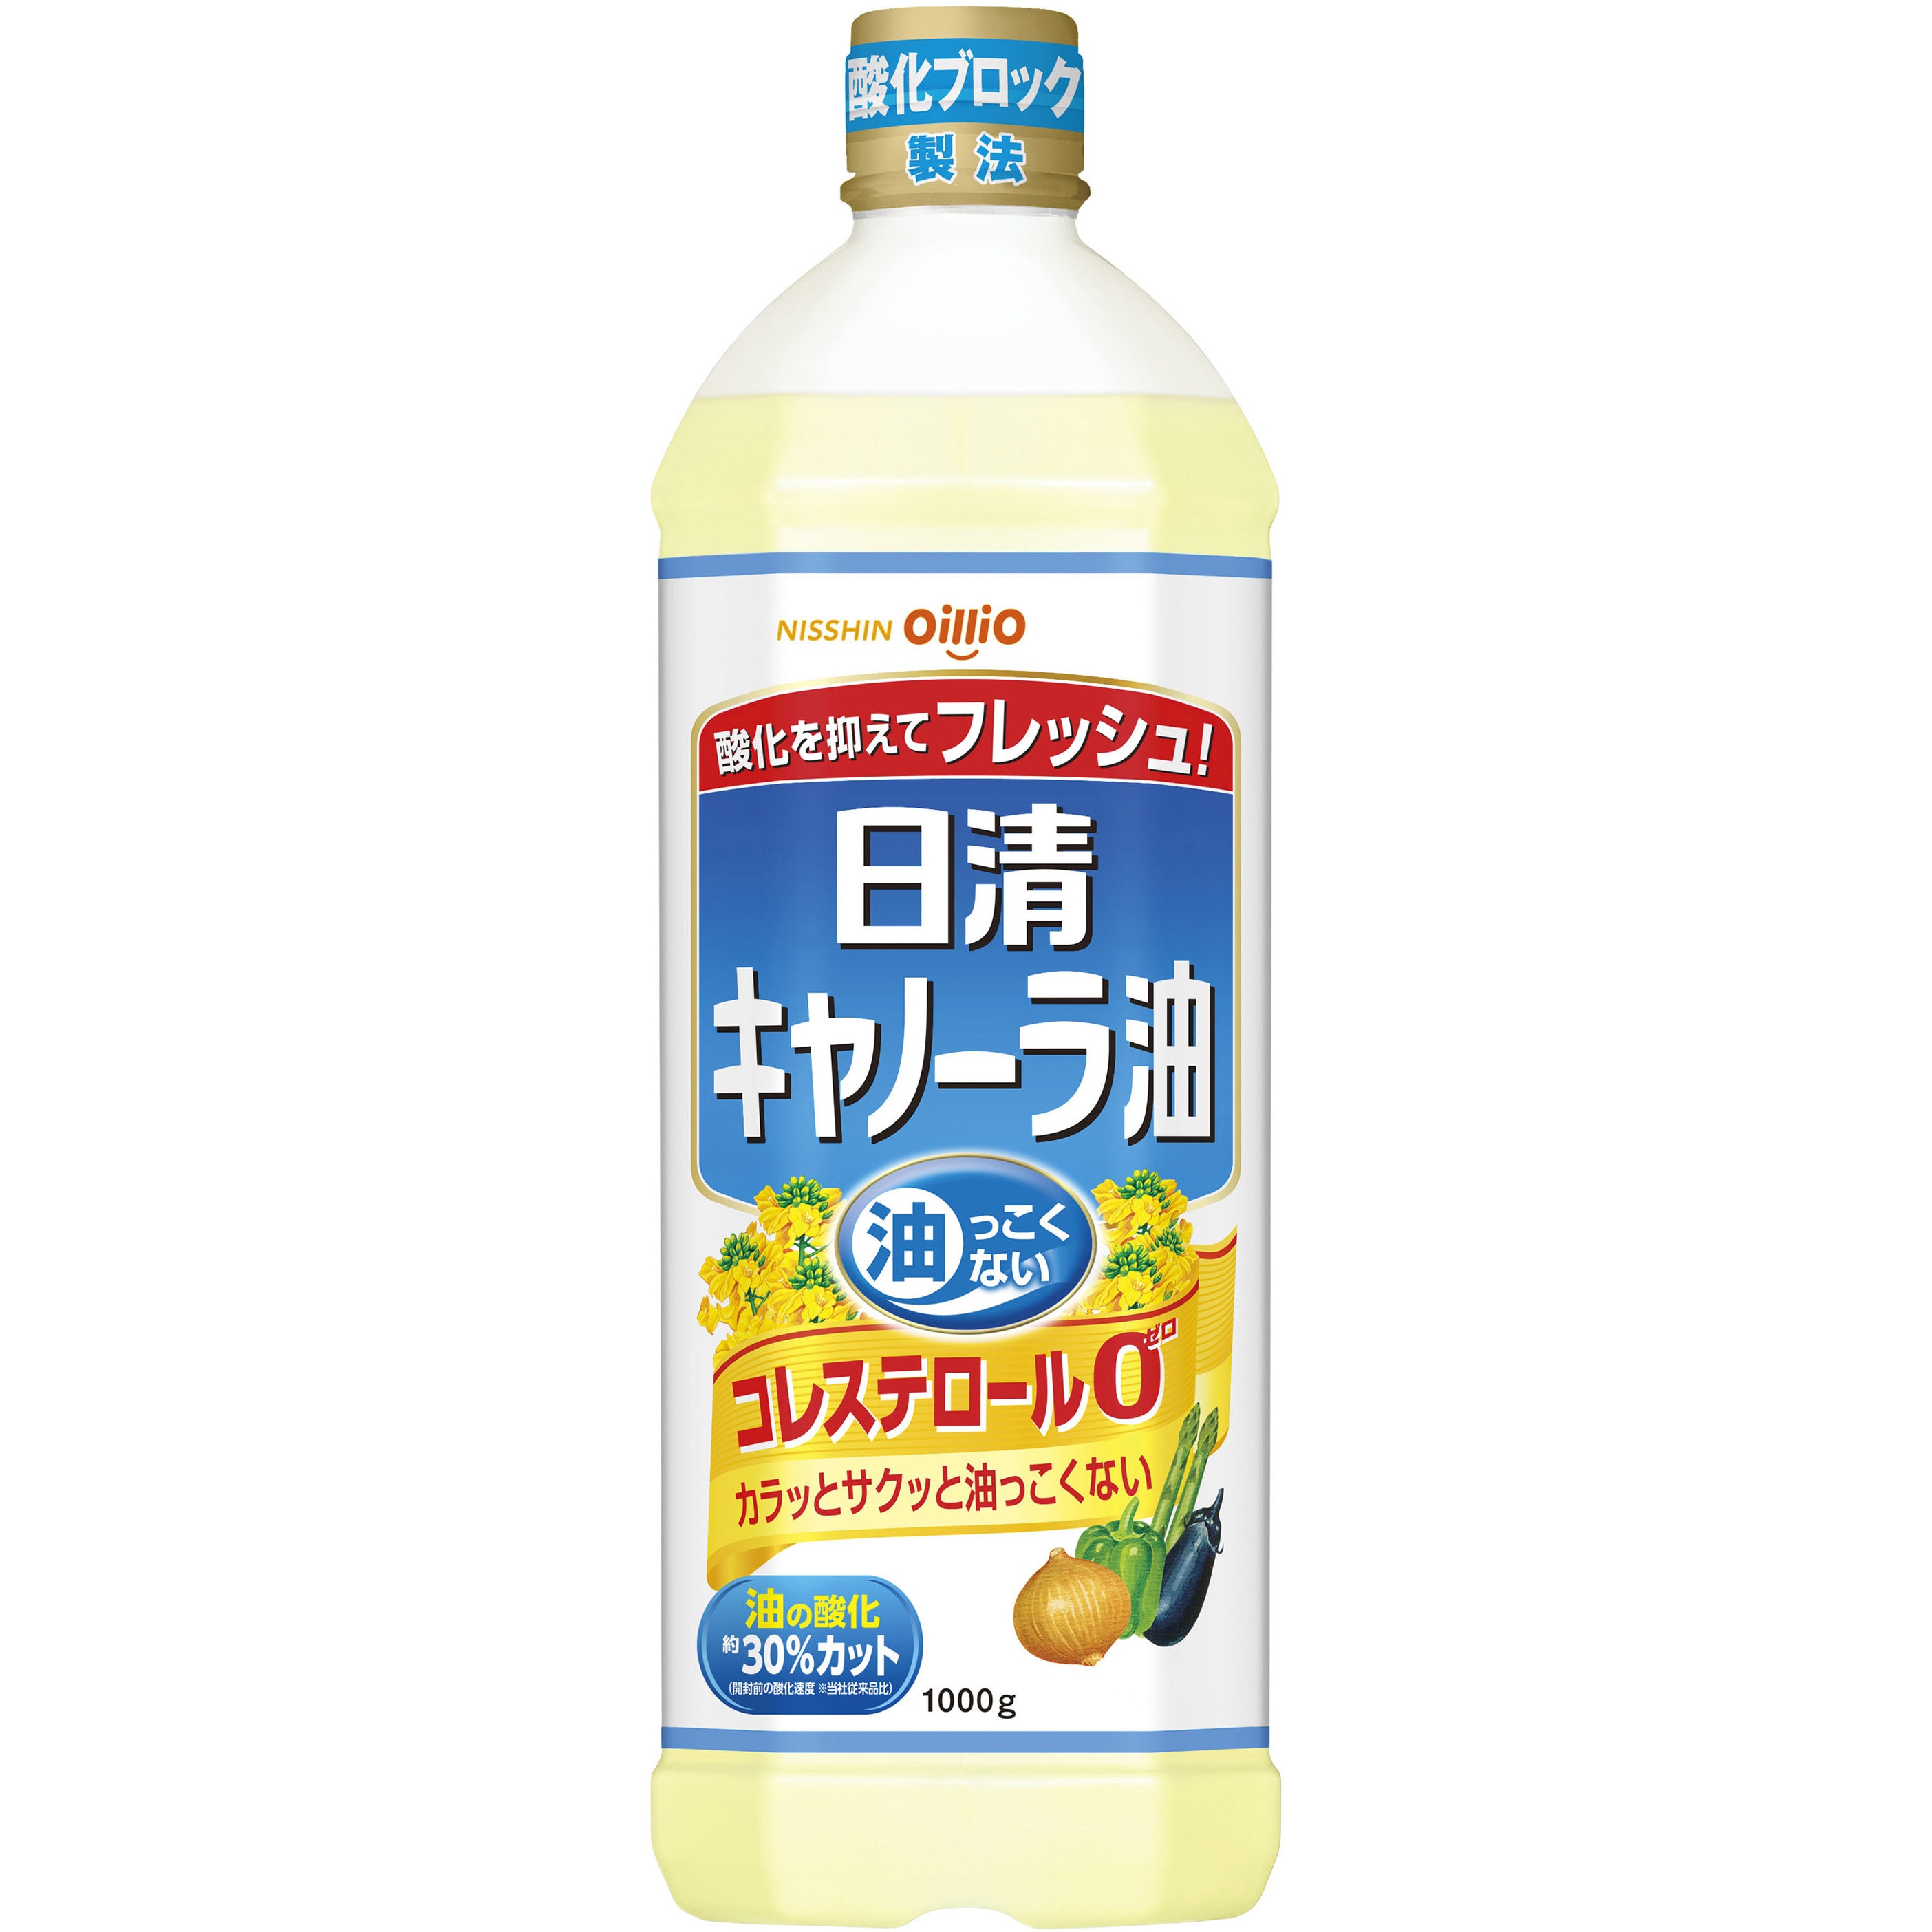 日清オイリオ ヘルシーオフ 16本 - 調味料